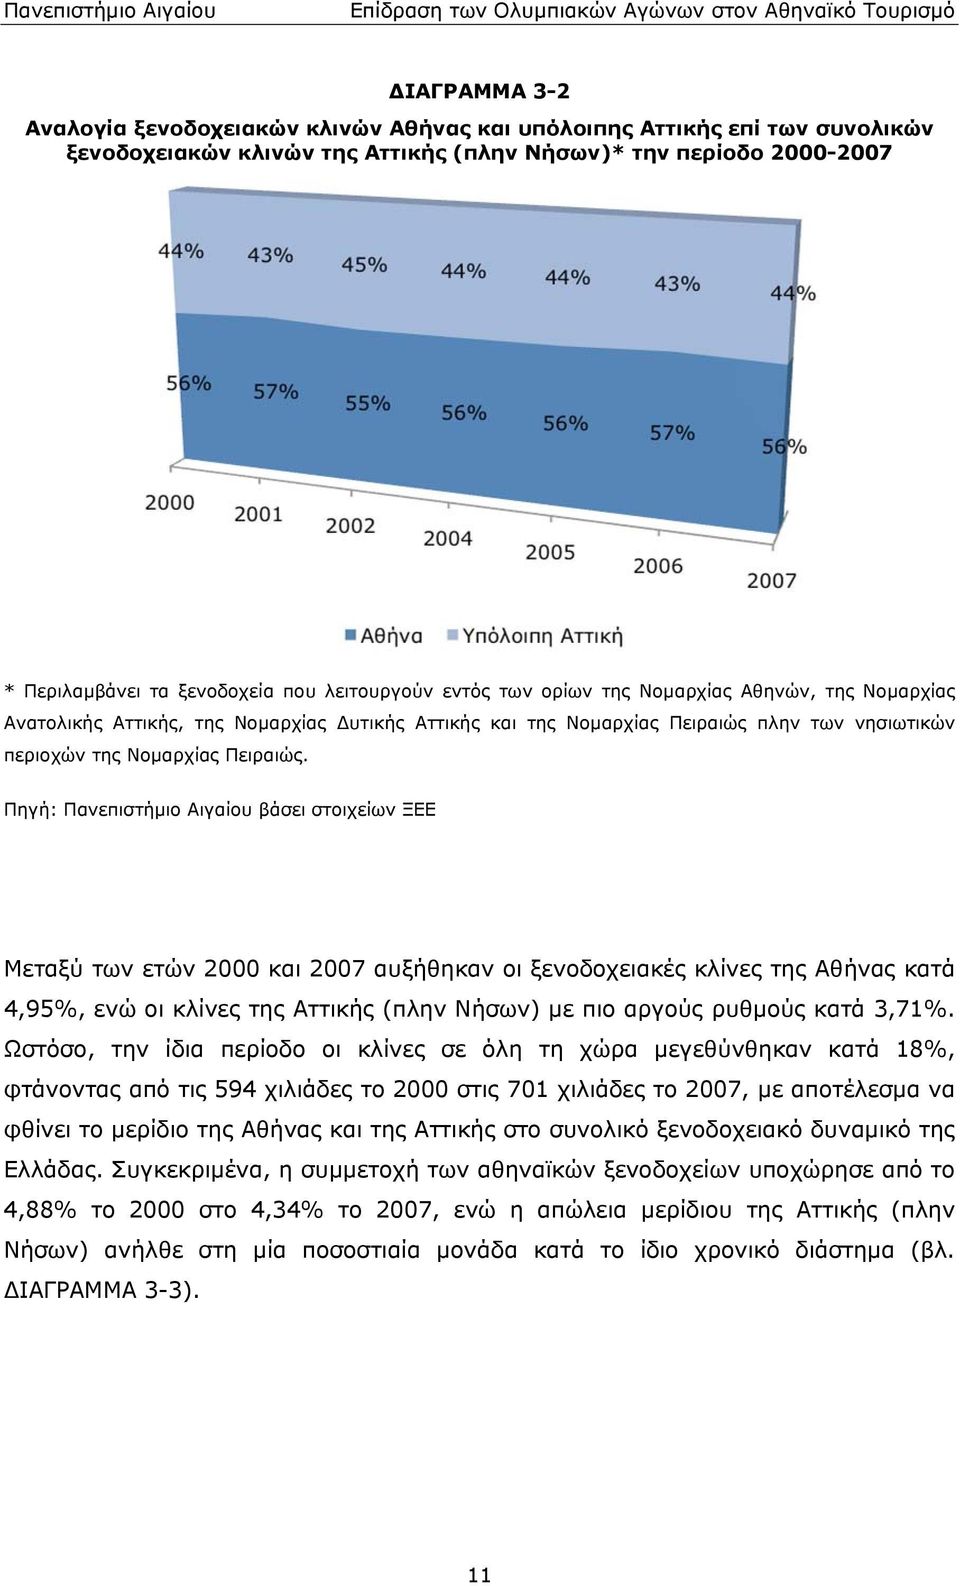 Πανεπιστήμιο Αιγαίου βάσει στοιχείων ΞΕΕ Μεταξύ των ετών 2000 και 2007 αυξήθηκαν οι ξενοδοχειακές κλίνες της Αθήνας κατά 4,95%, ενώ οι κλίνες της Αττικής (πλην Νήσων) με πιο αργούς ρυθμούς κατά 3,71%